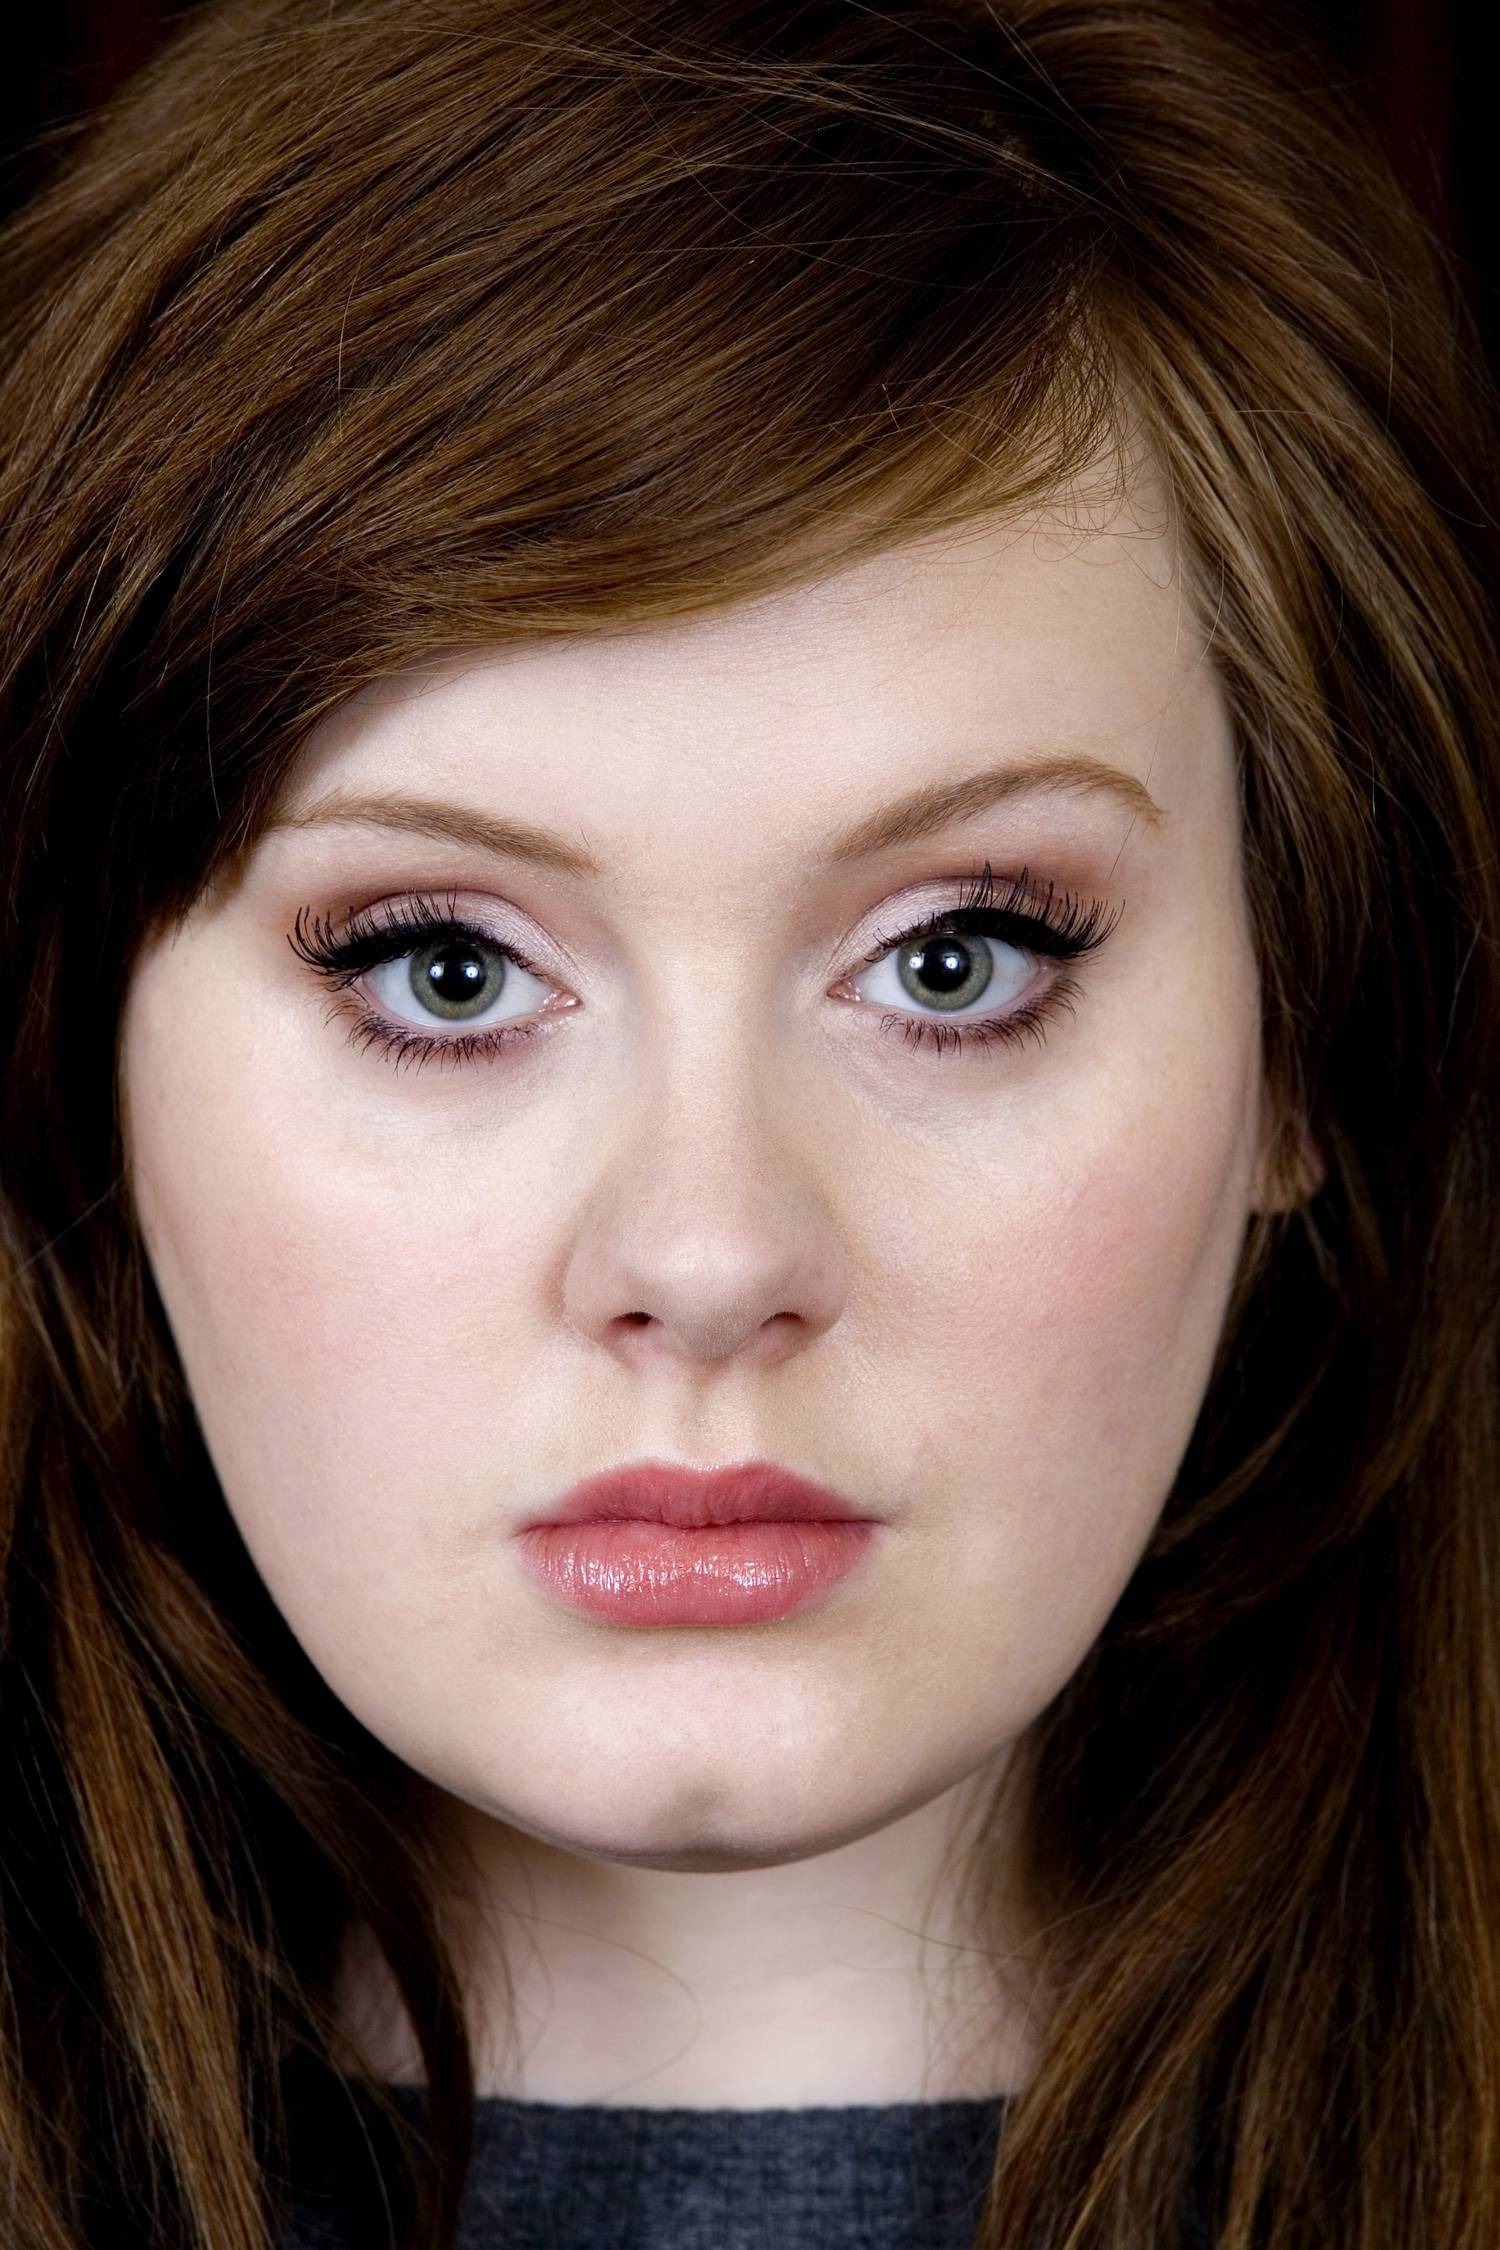 Adele 2009-ben még így nézett ki.